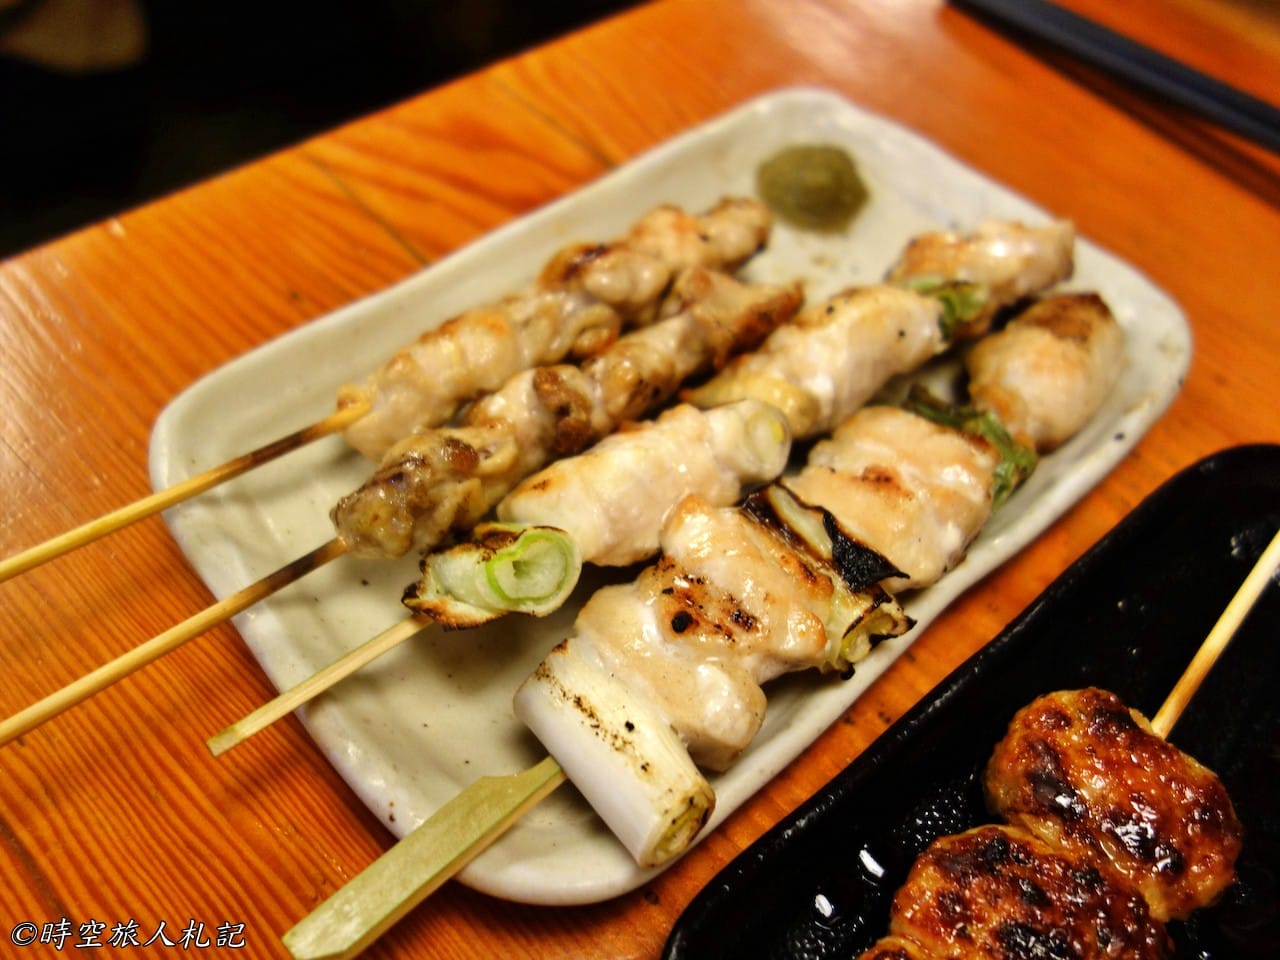 神戶美食,kobe-food,日本神戶美食 38